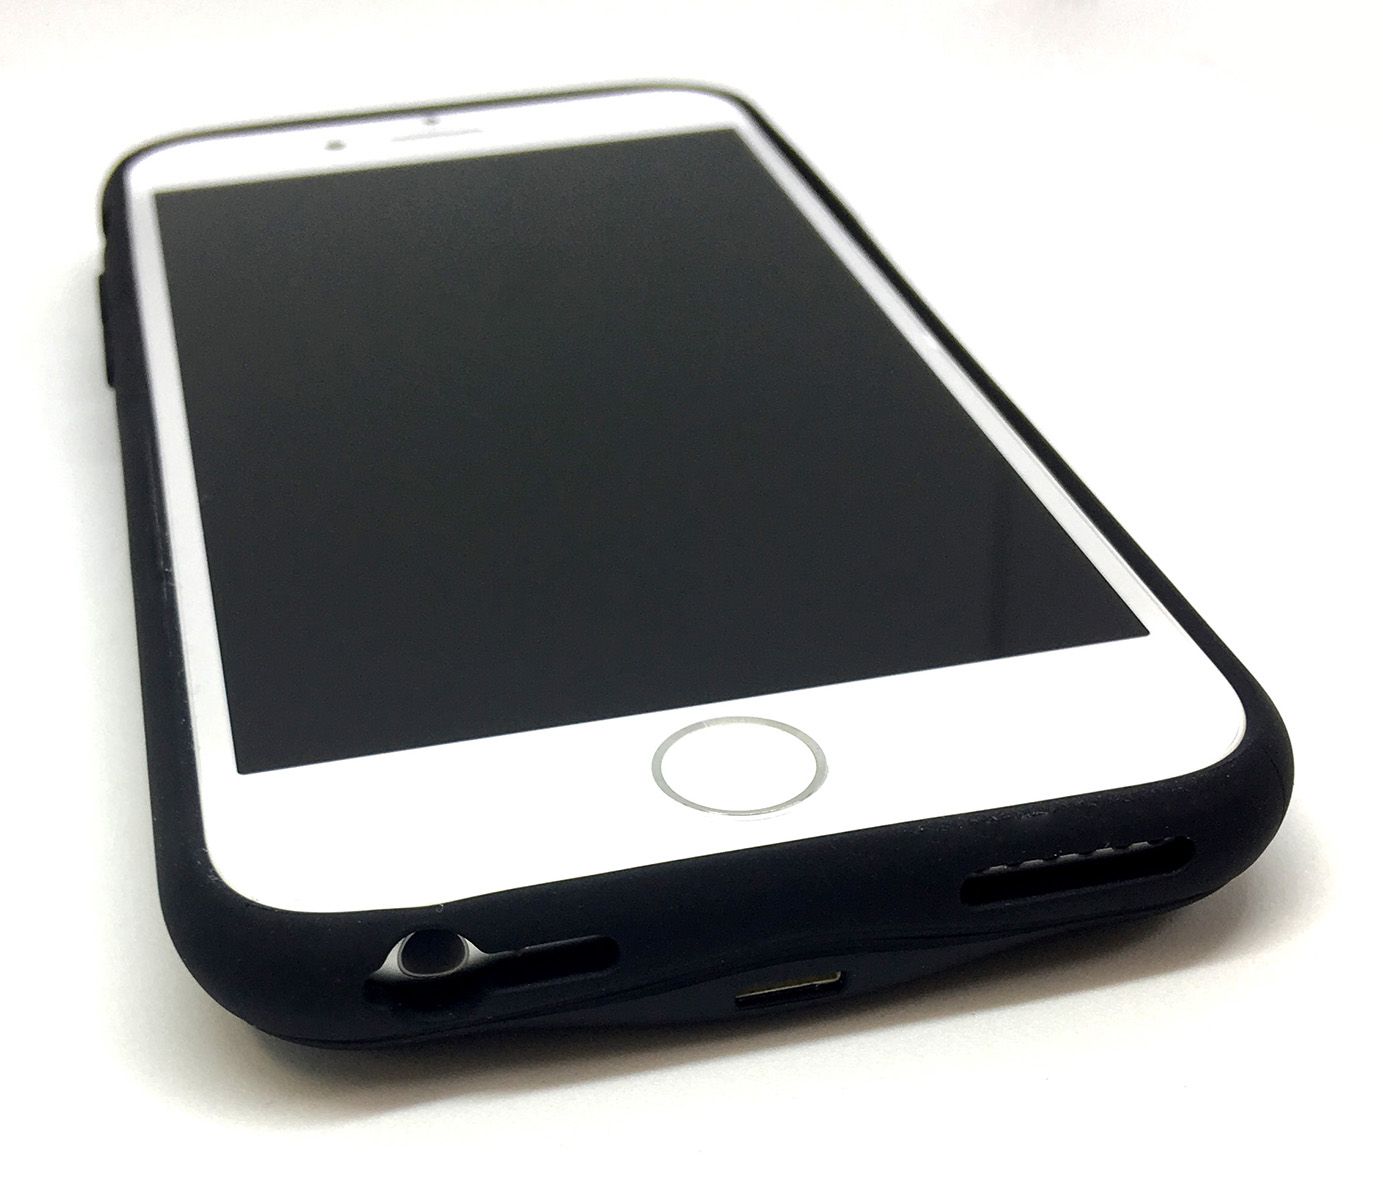 WELUV iPhone6,6s,7,8 モバイルバッテリー内蔵ケース Qiワイヤレス充電対応 2400mAh メール便なら送料無料画像